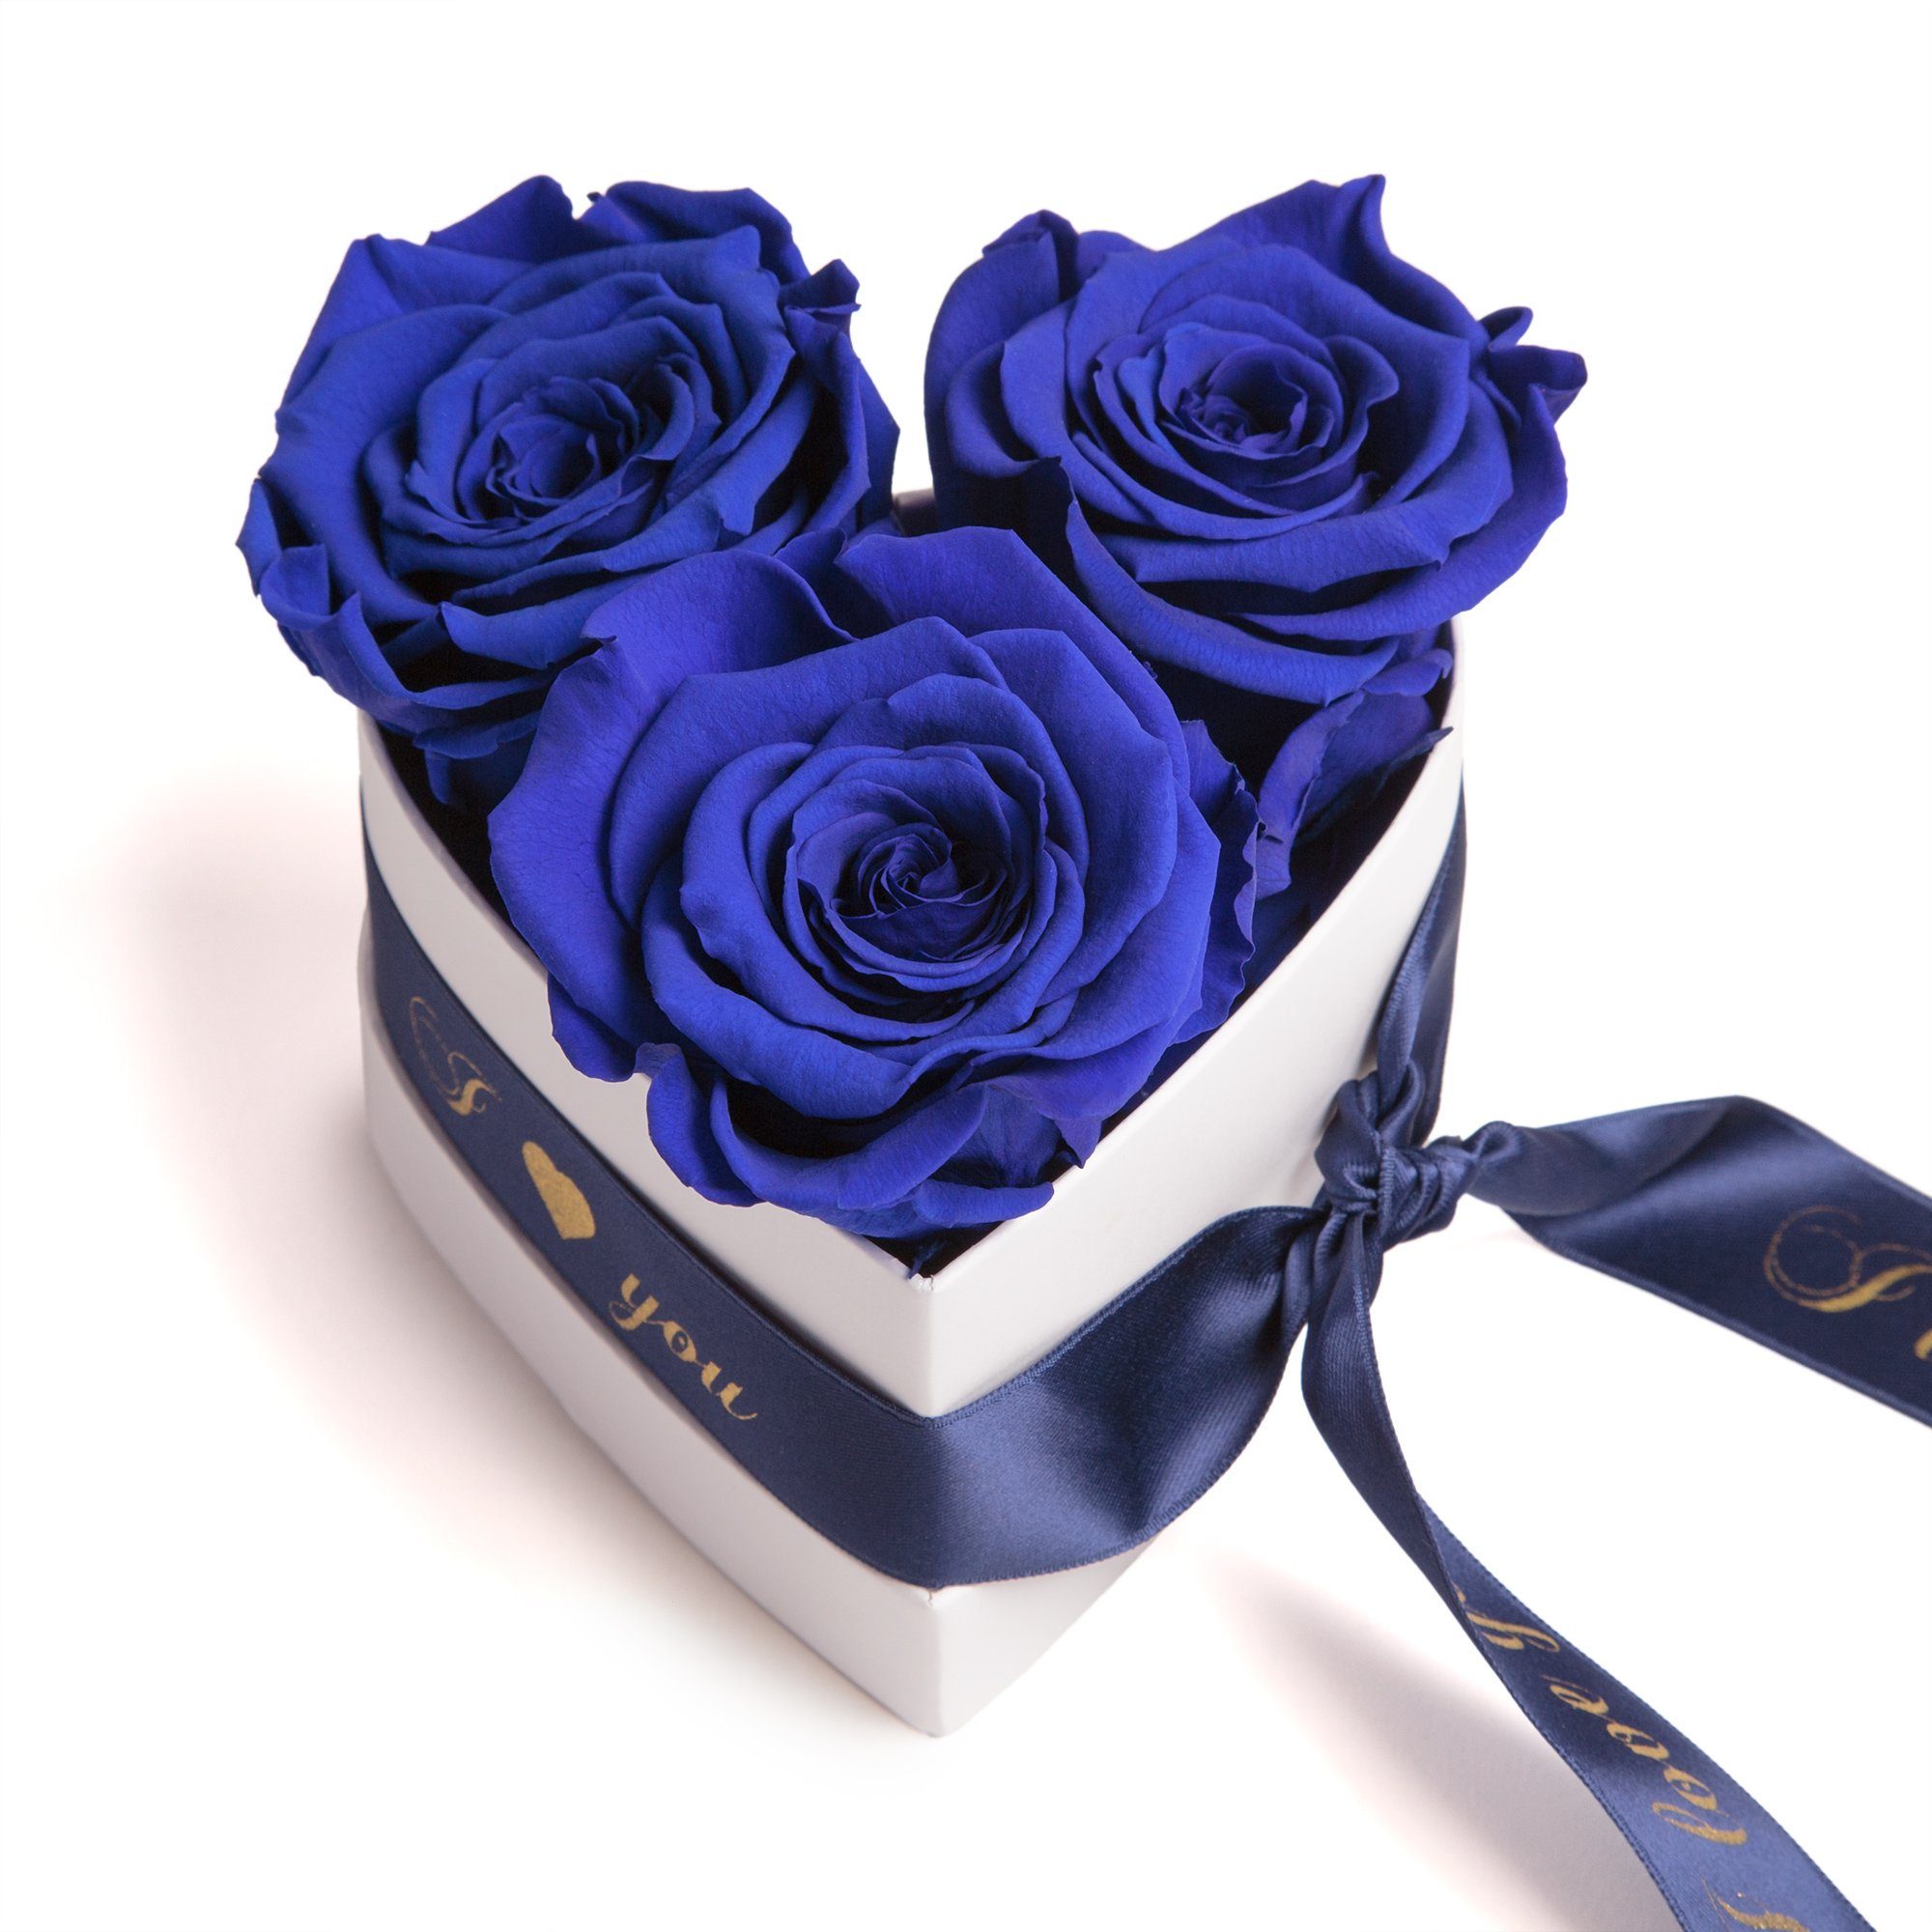 Sie für I 3 Höhe Blau konservierte Valentinstag Geschenk cm, ROSEMARIE Kunstblume 8.5 in Infinity SCHULZ Rose, Heidelberg, Love Rosenbox Herz You Rosen Box